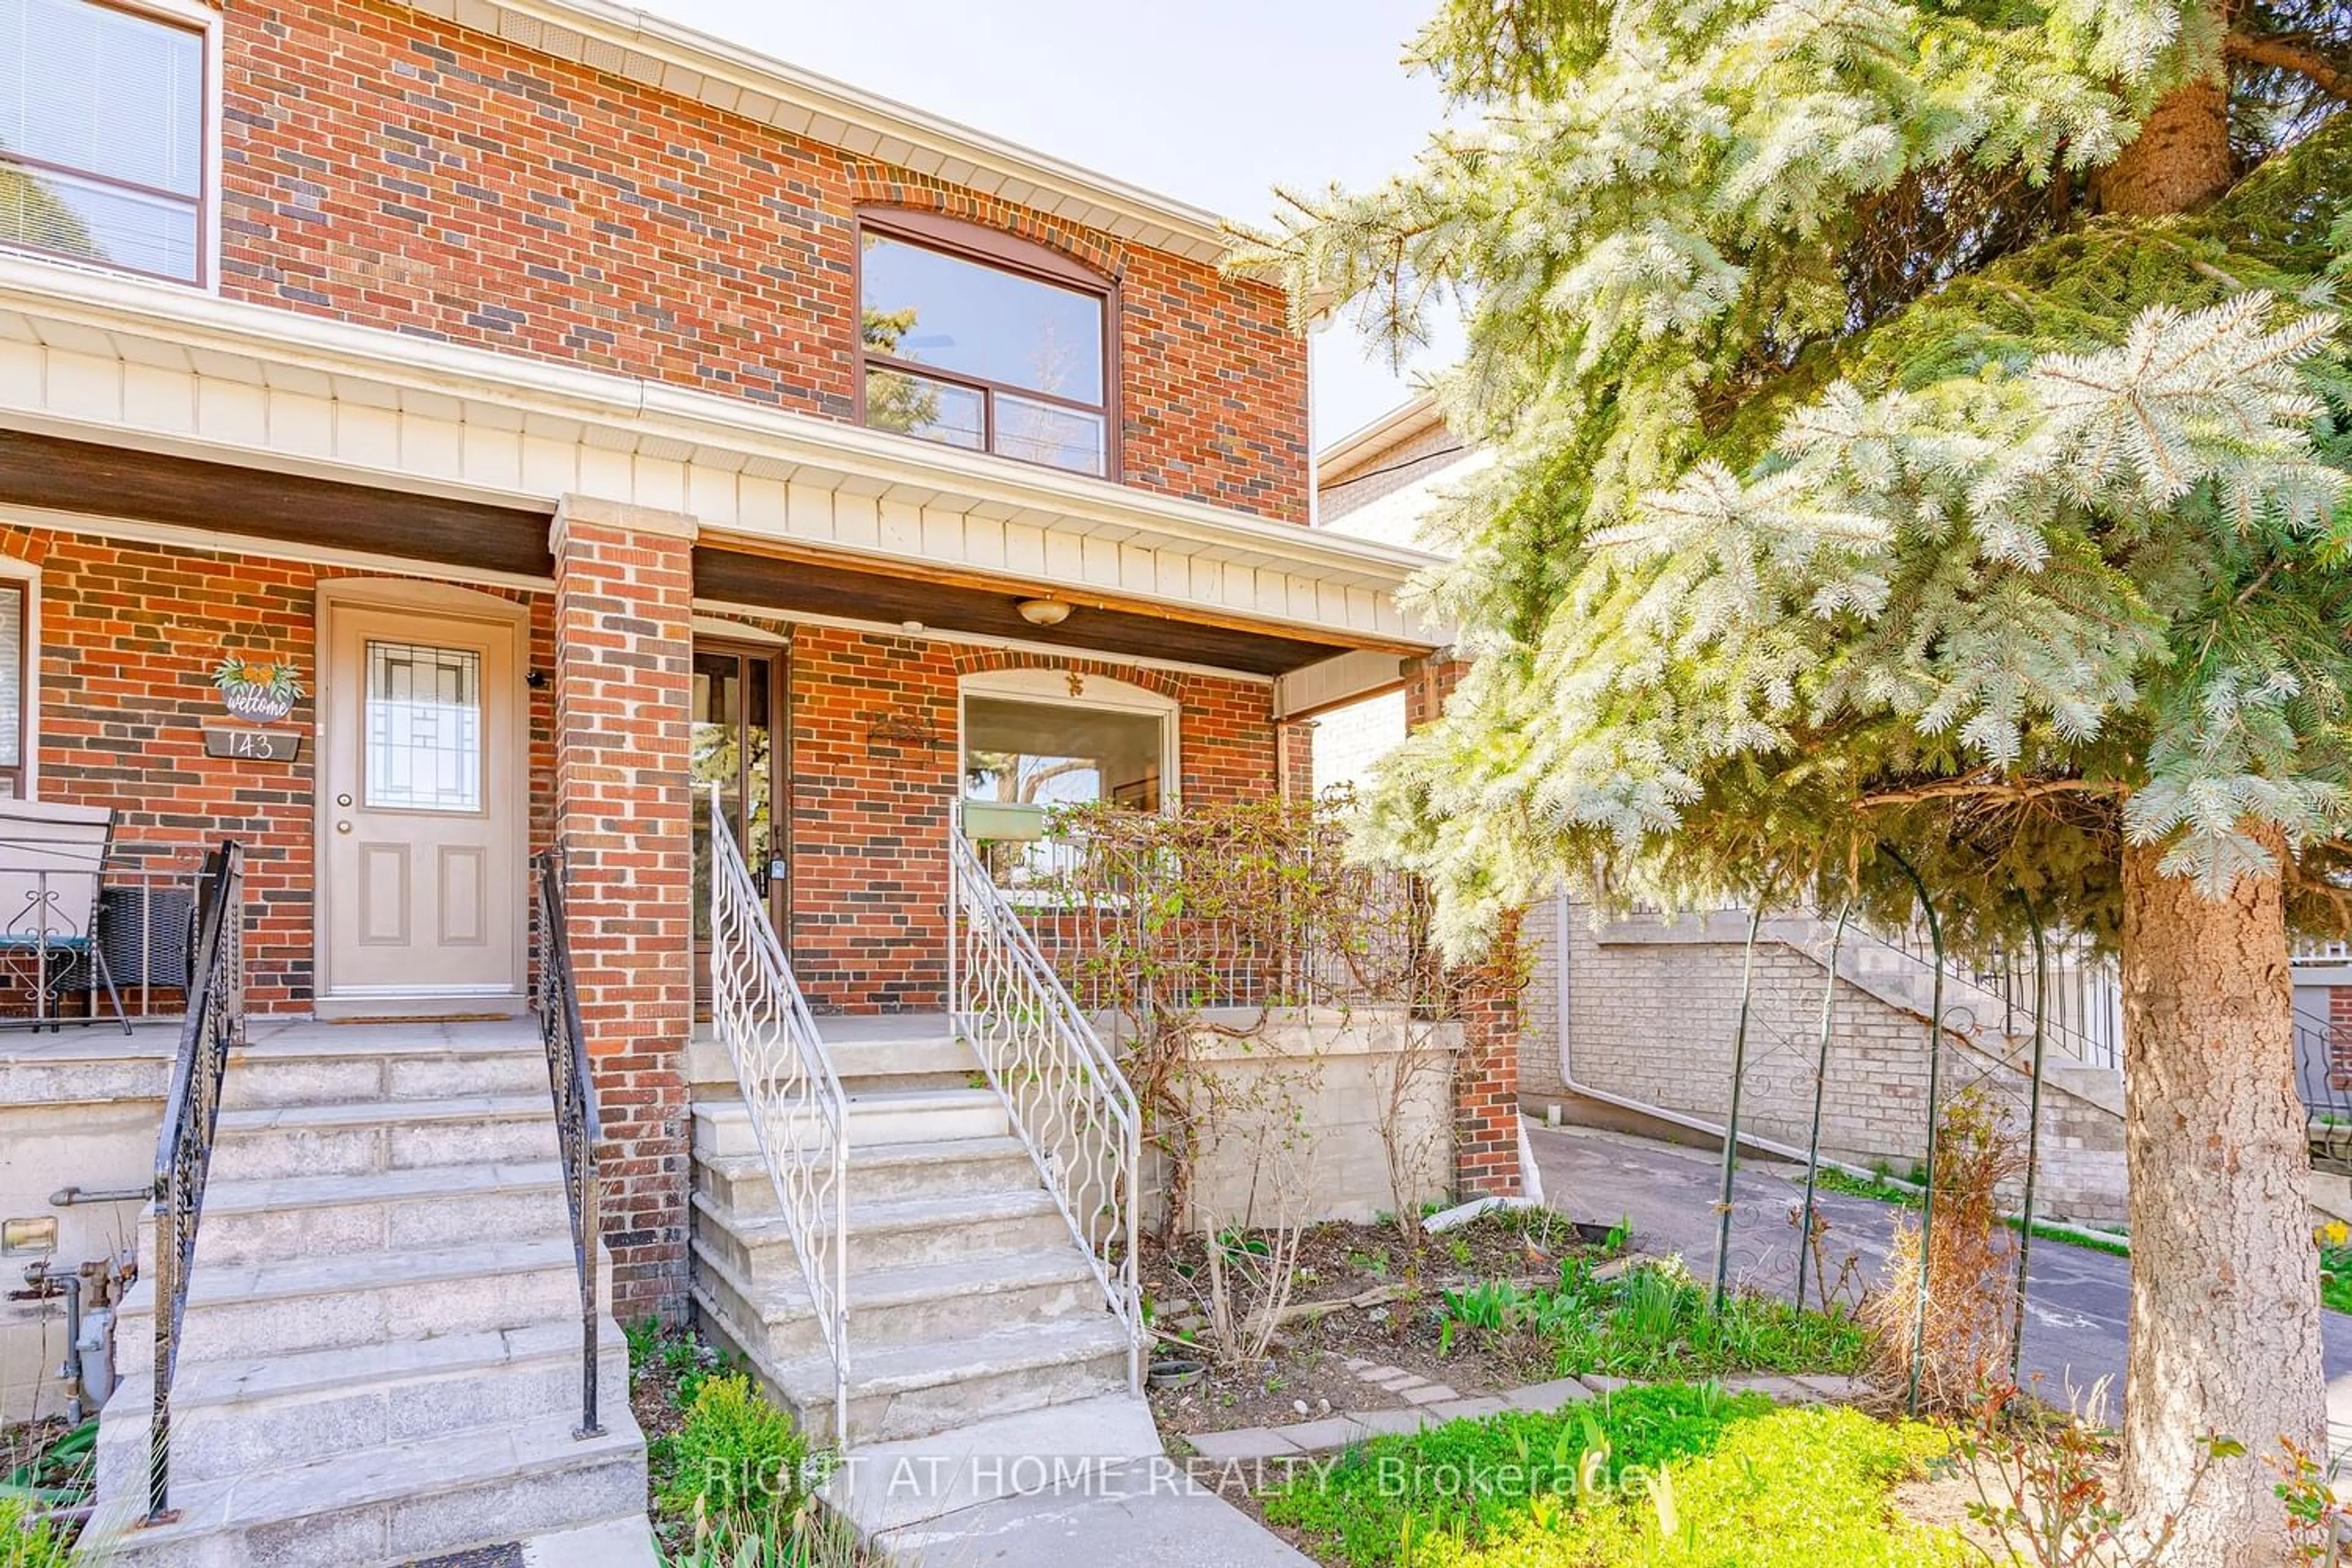 Home with brick exterior material for 145 Livingstone Ave, Toronto Ontario M6E 2L9